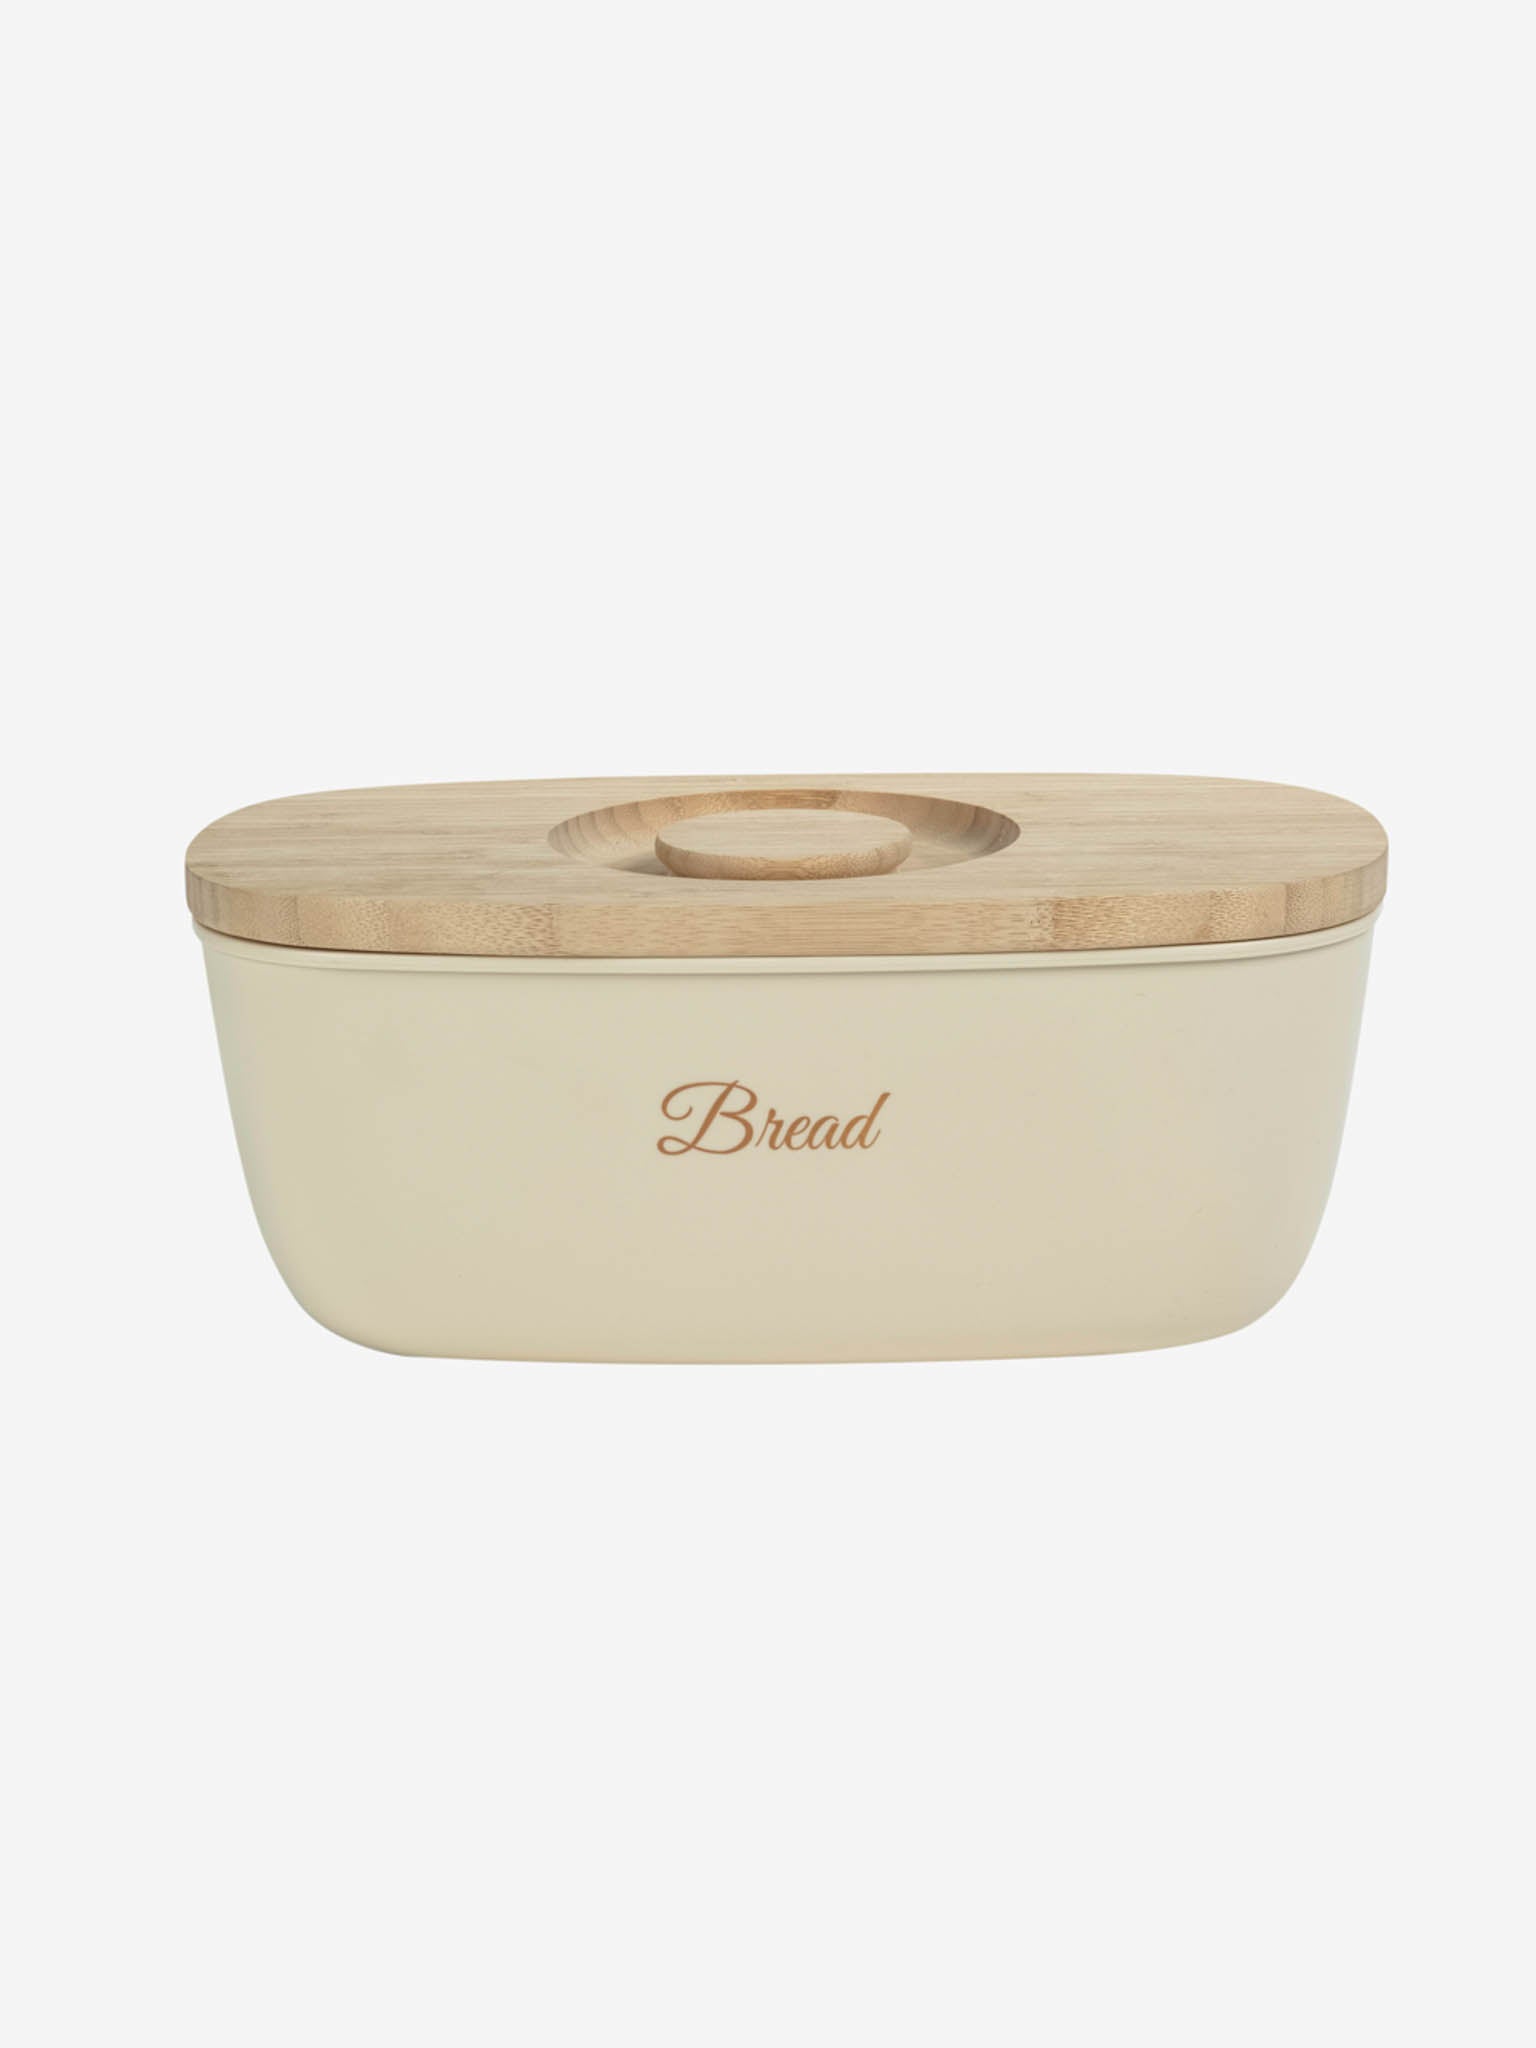 Oregano Bread Box